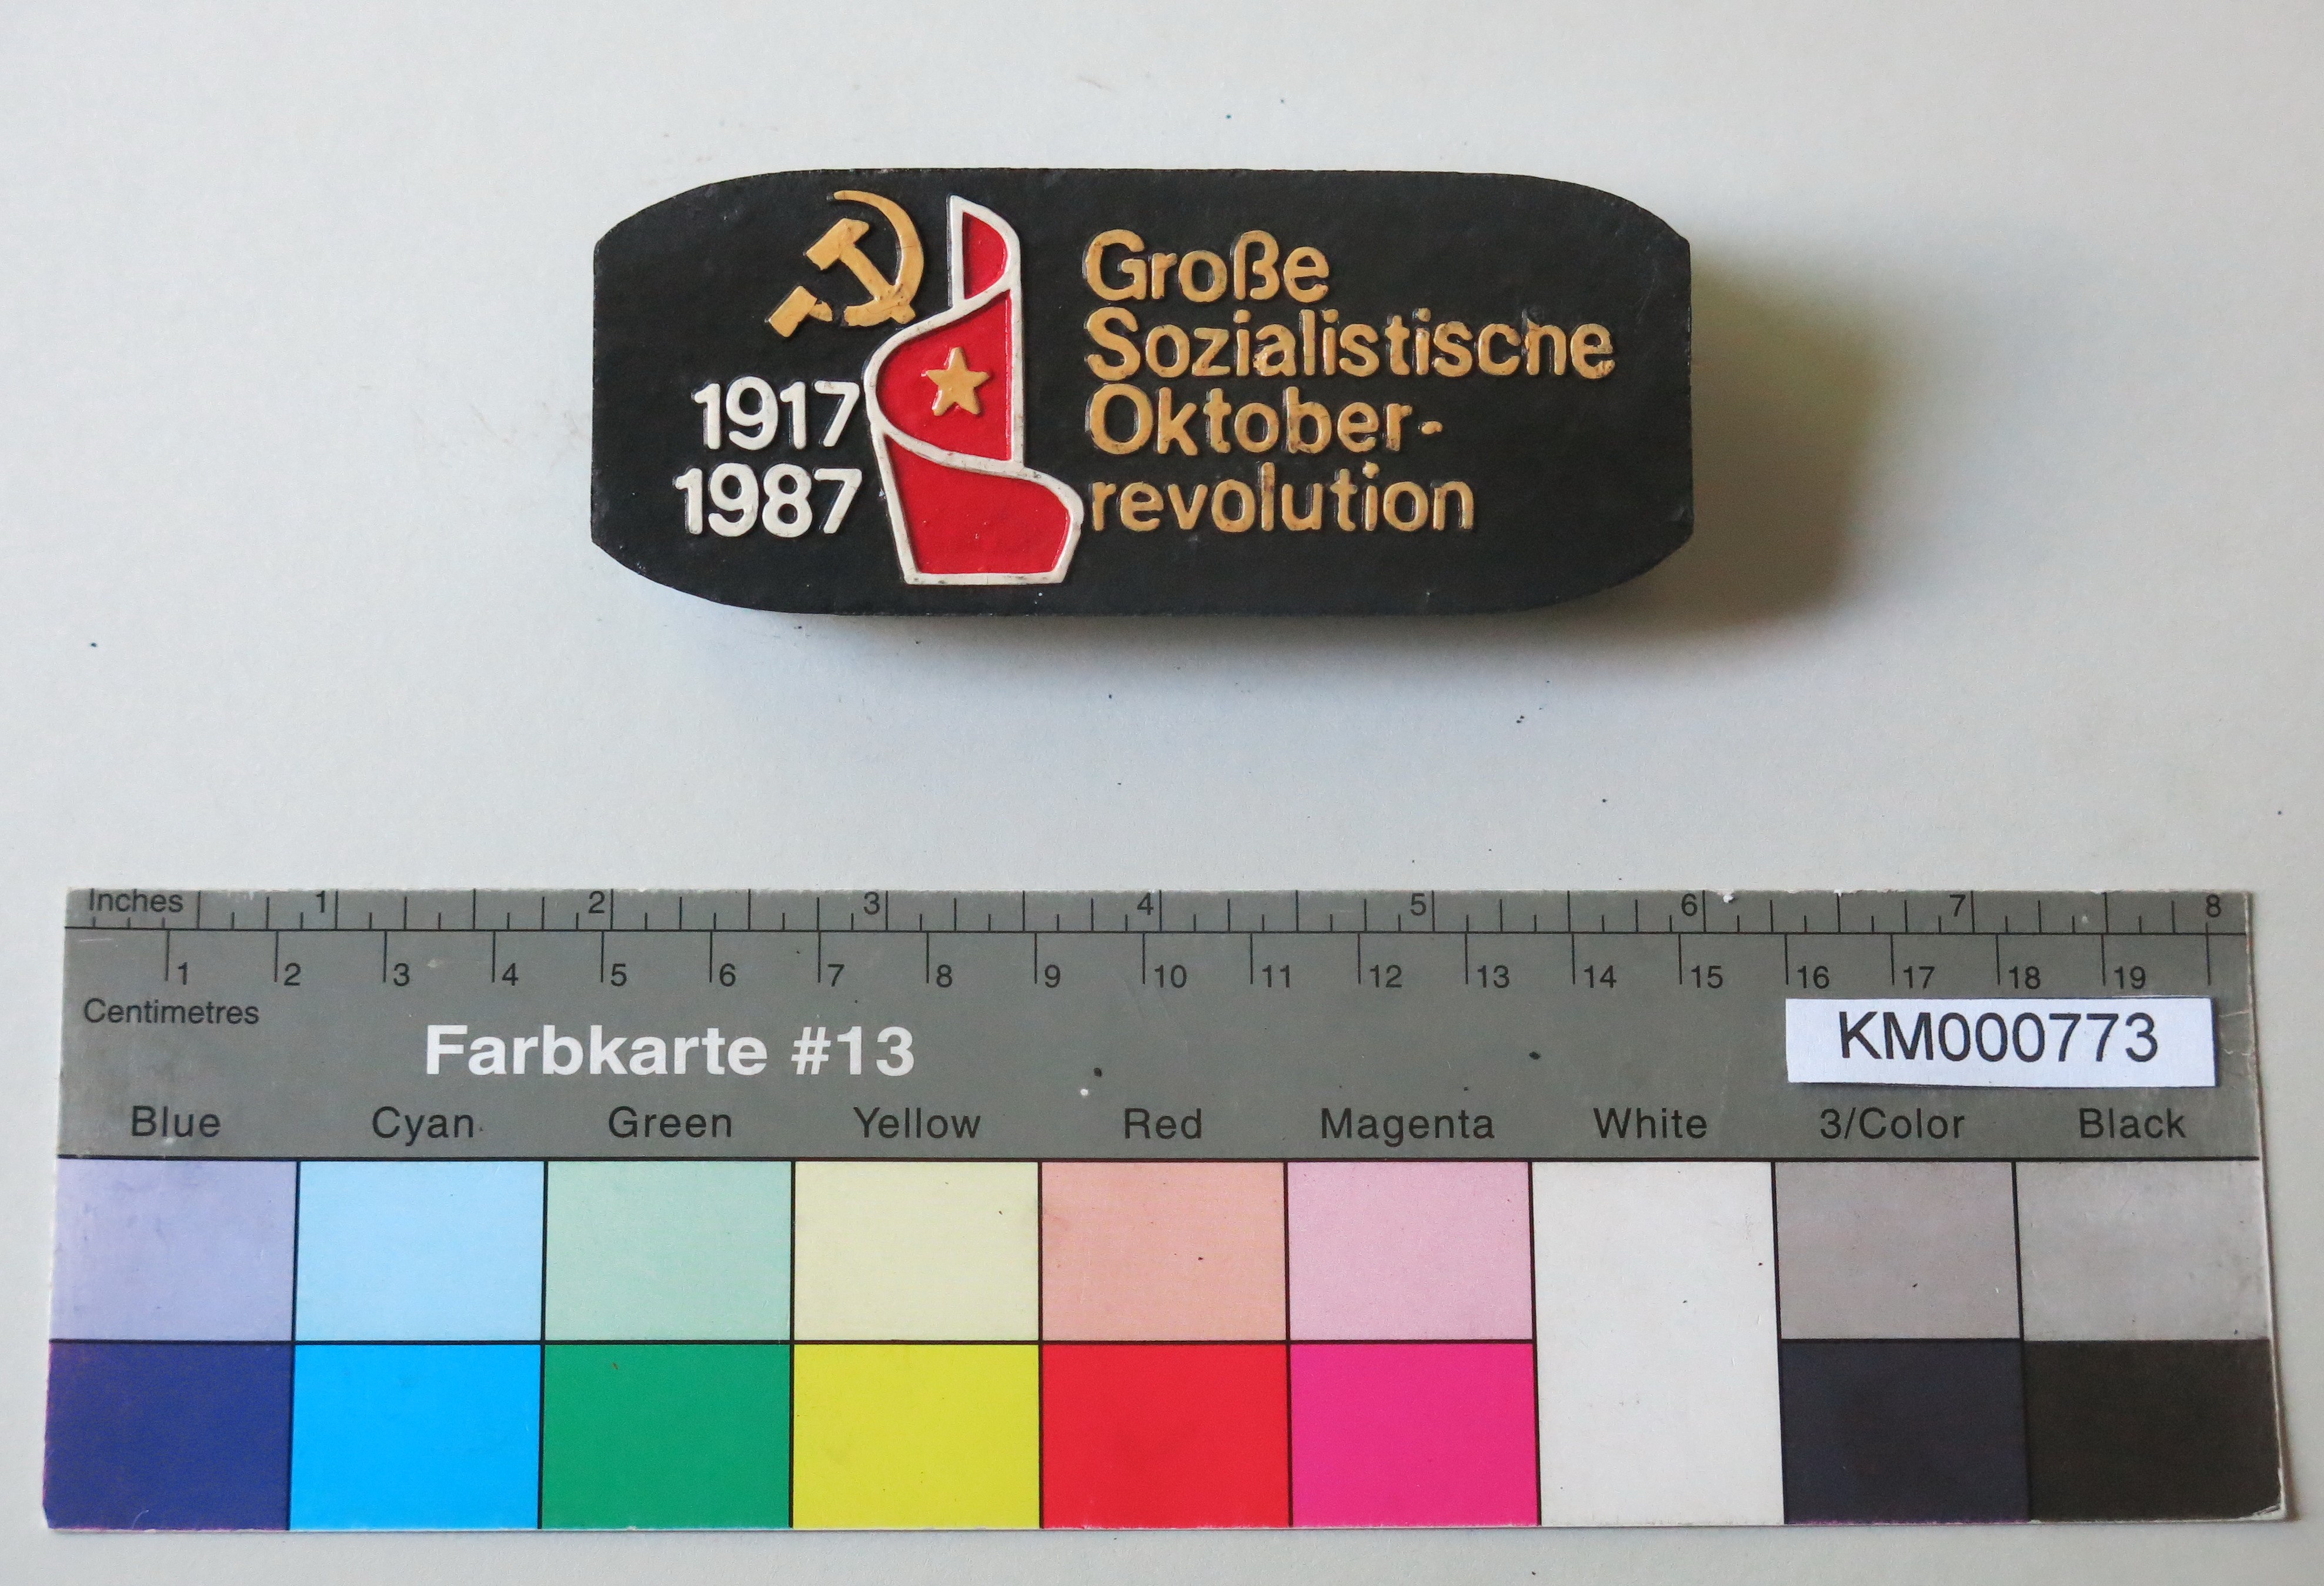 Zierbrikett "1917 1987 Große Sozialistische Oktoberrevolution" (Energiefabrik Knappenrode CC BY-SA)